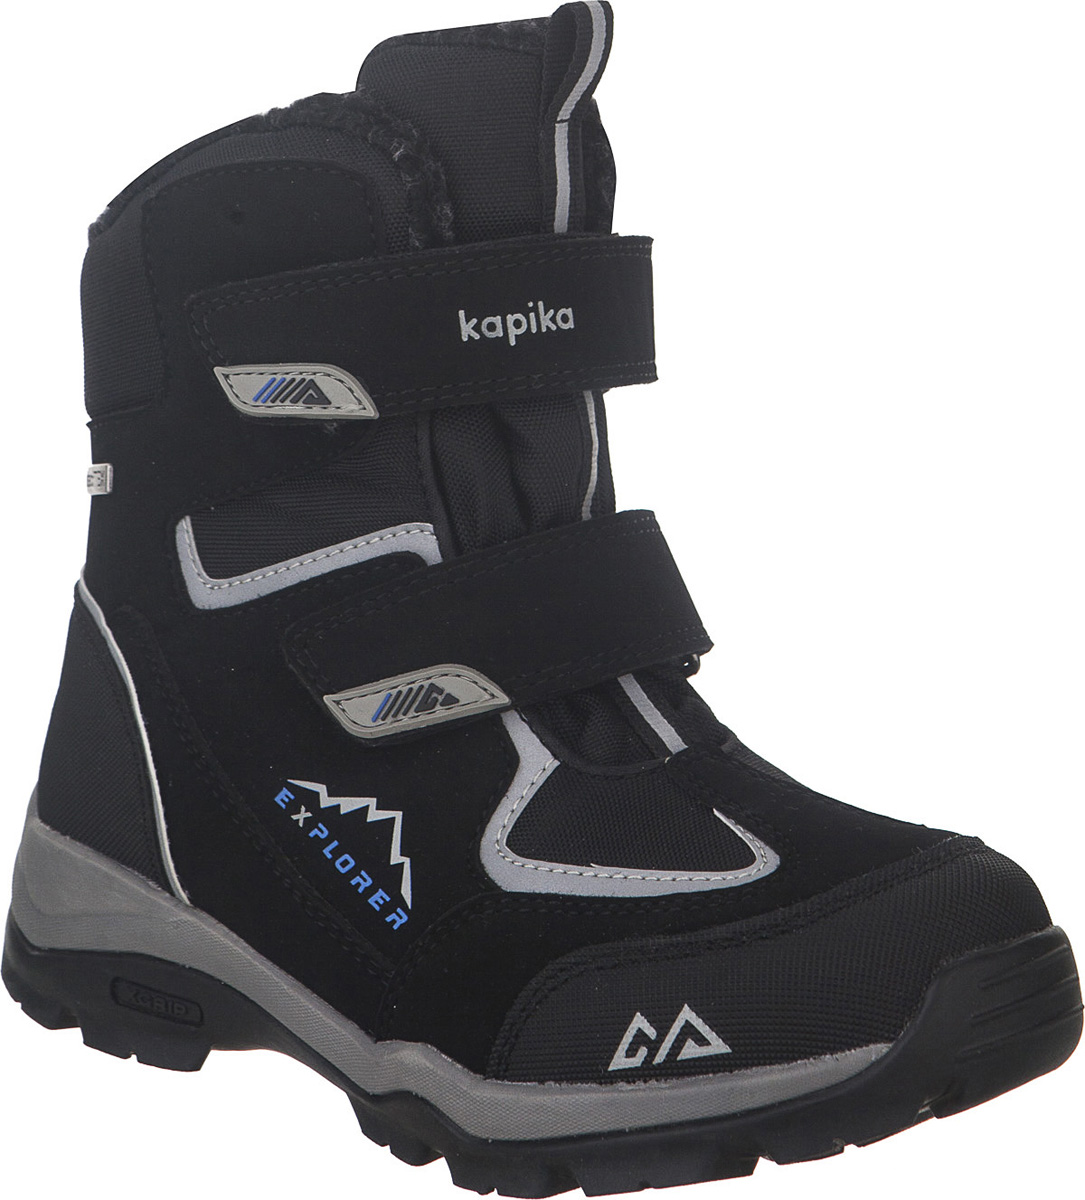 Ботинки для мальчика Kapika KapiTEX, цвет: черный. 43209-1. Размер 33